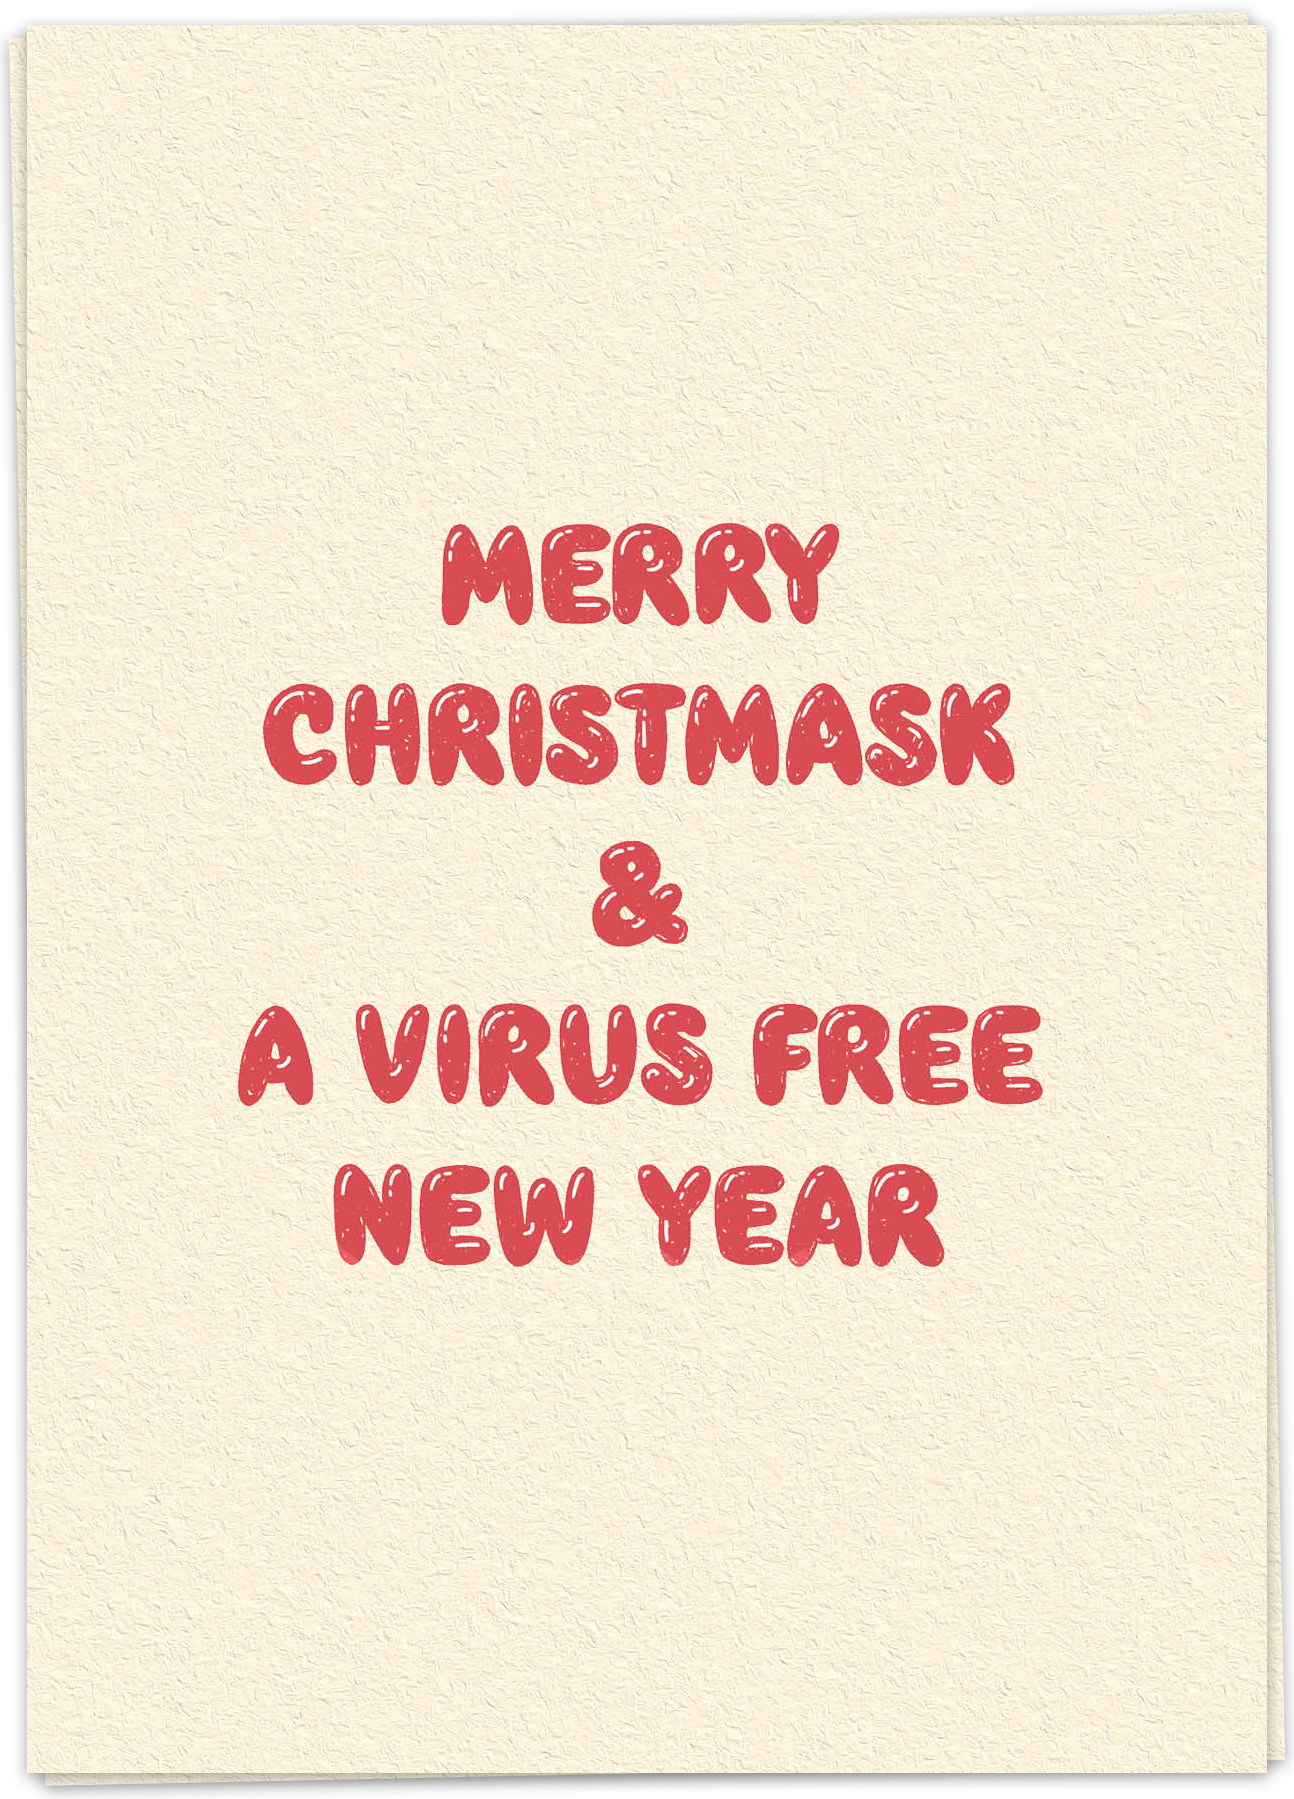 Virus free year